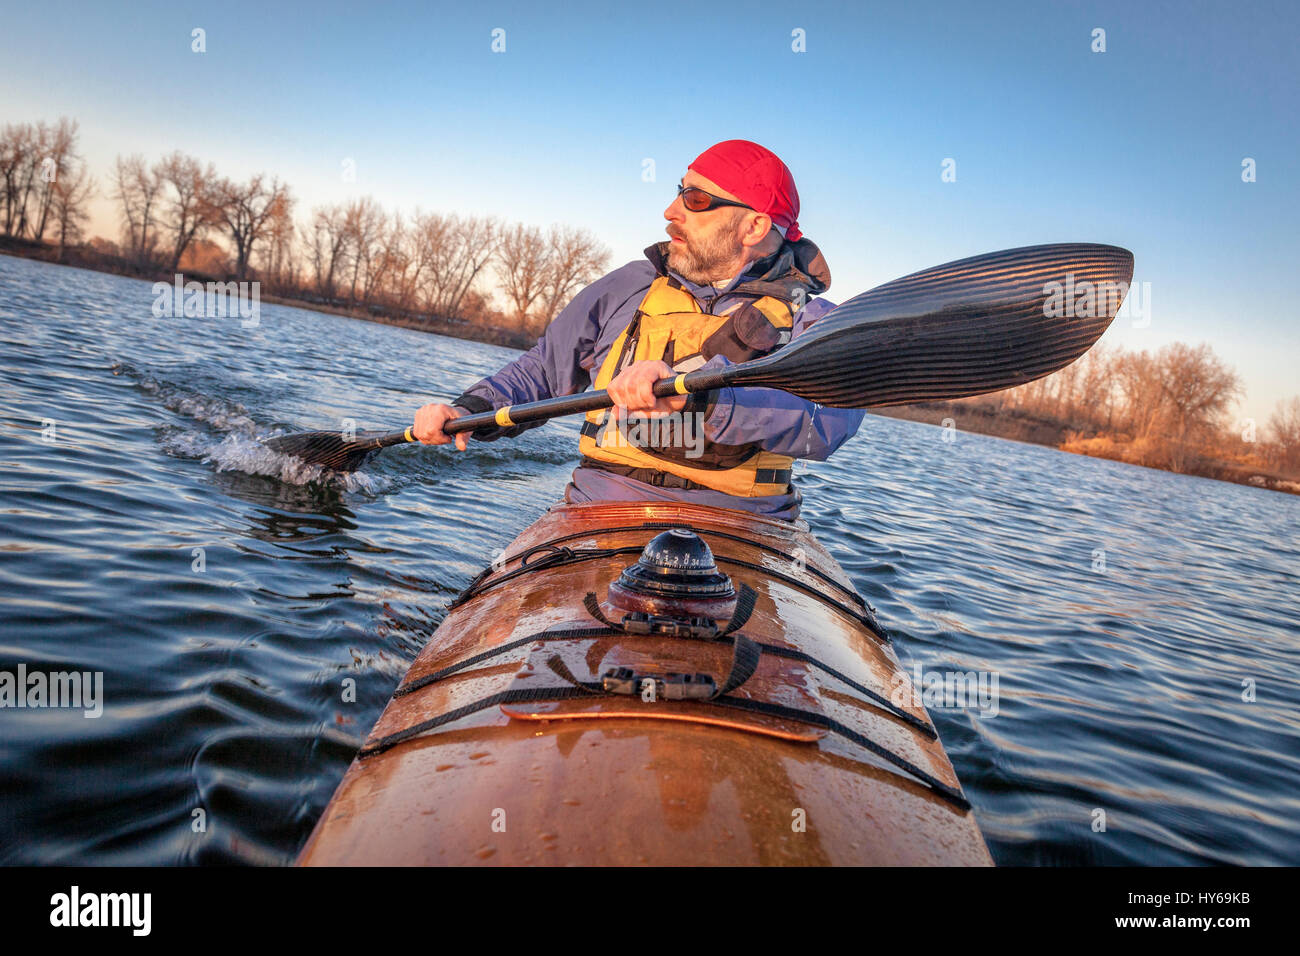 L'exercice de pagayeur mâles matures (en tournant à l'aide de bateau de course de la gouverne avec son aile pagaie en fibre de carbone) dans une maison en bois construite sur le lac en kayak de mer, automne sce Banque D'Images